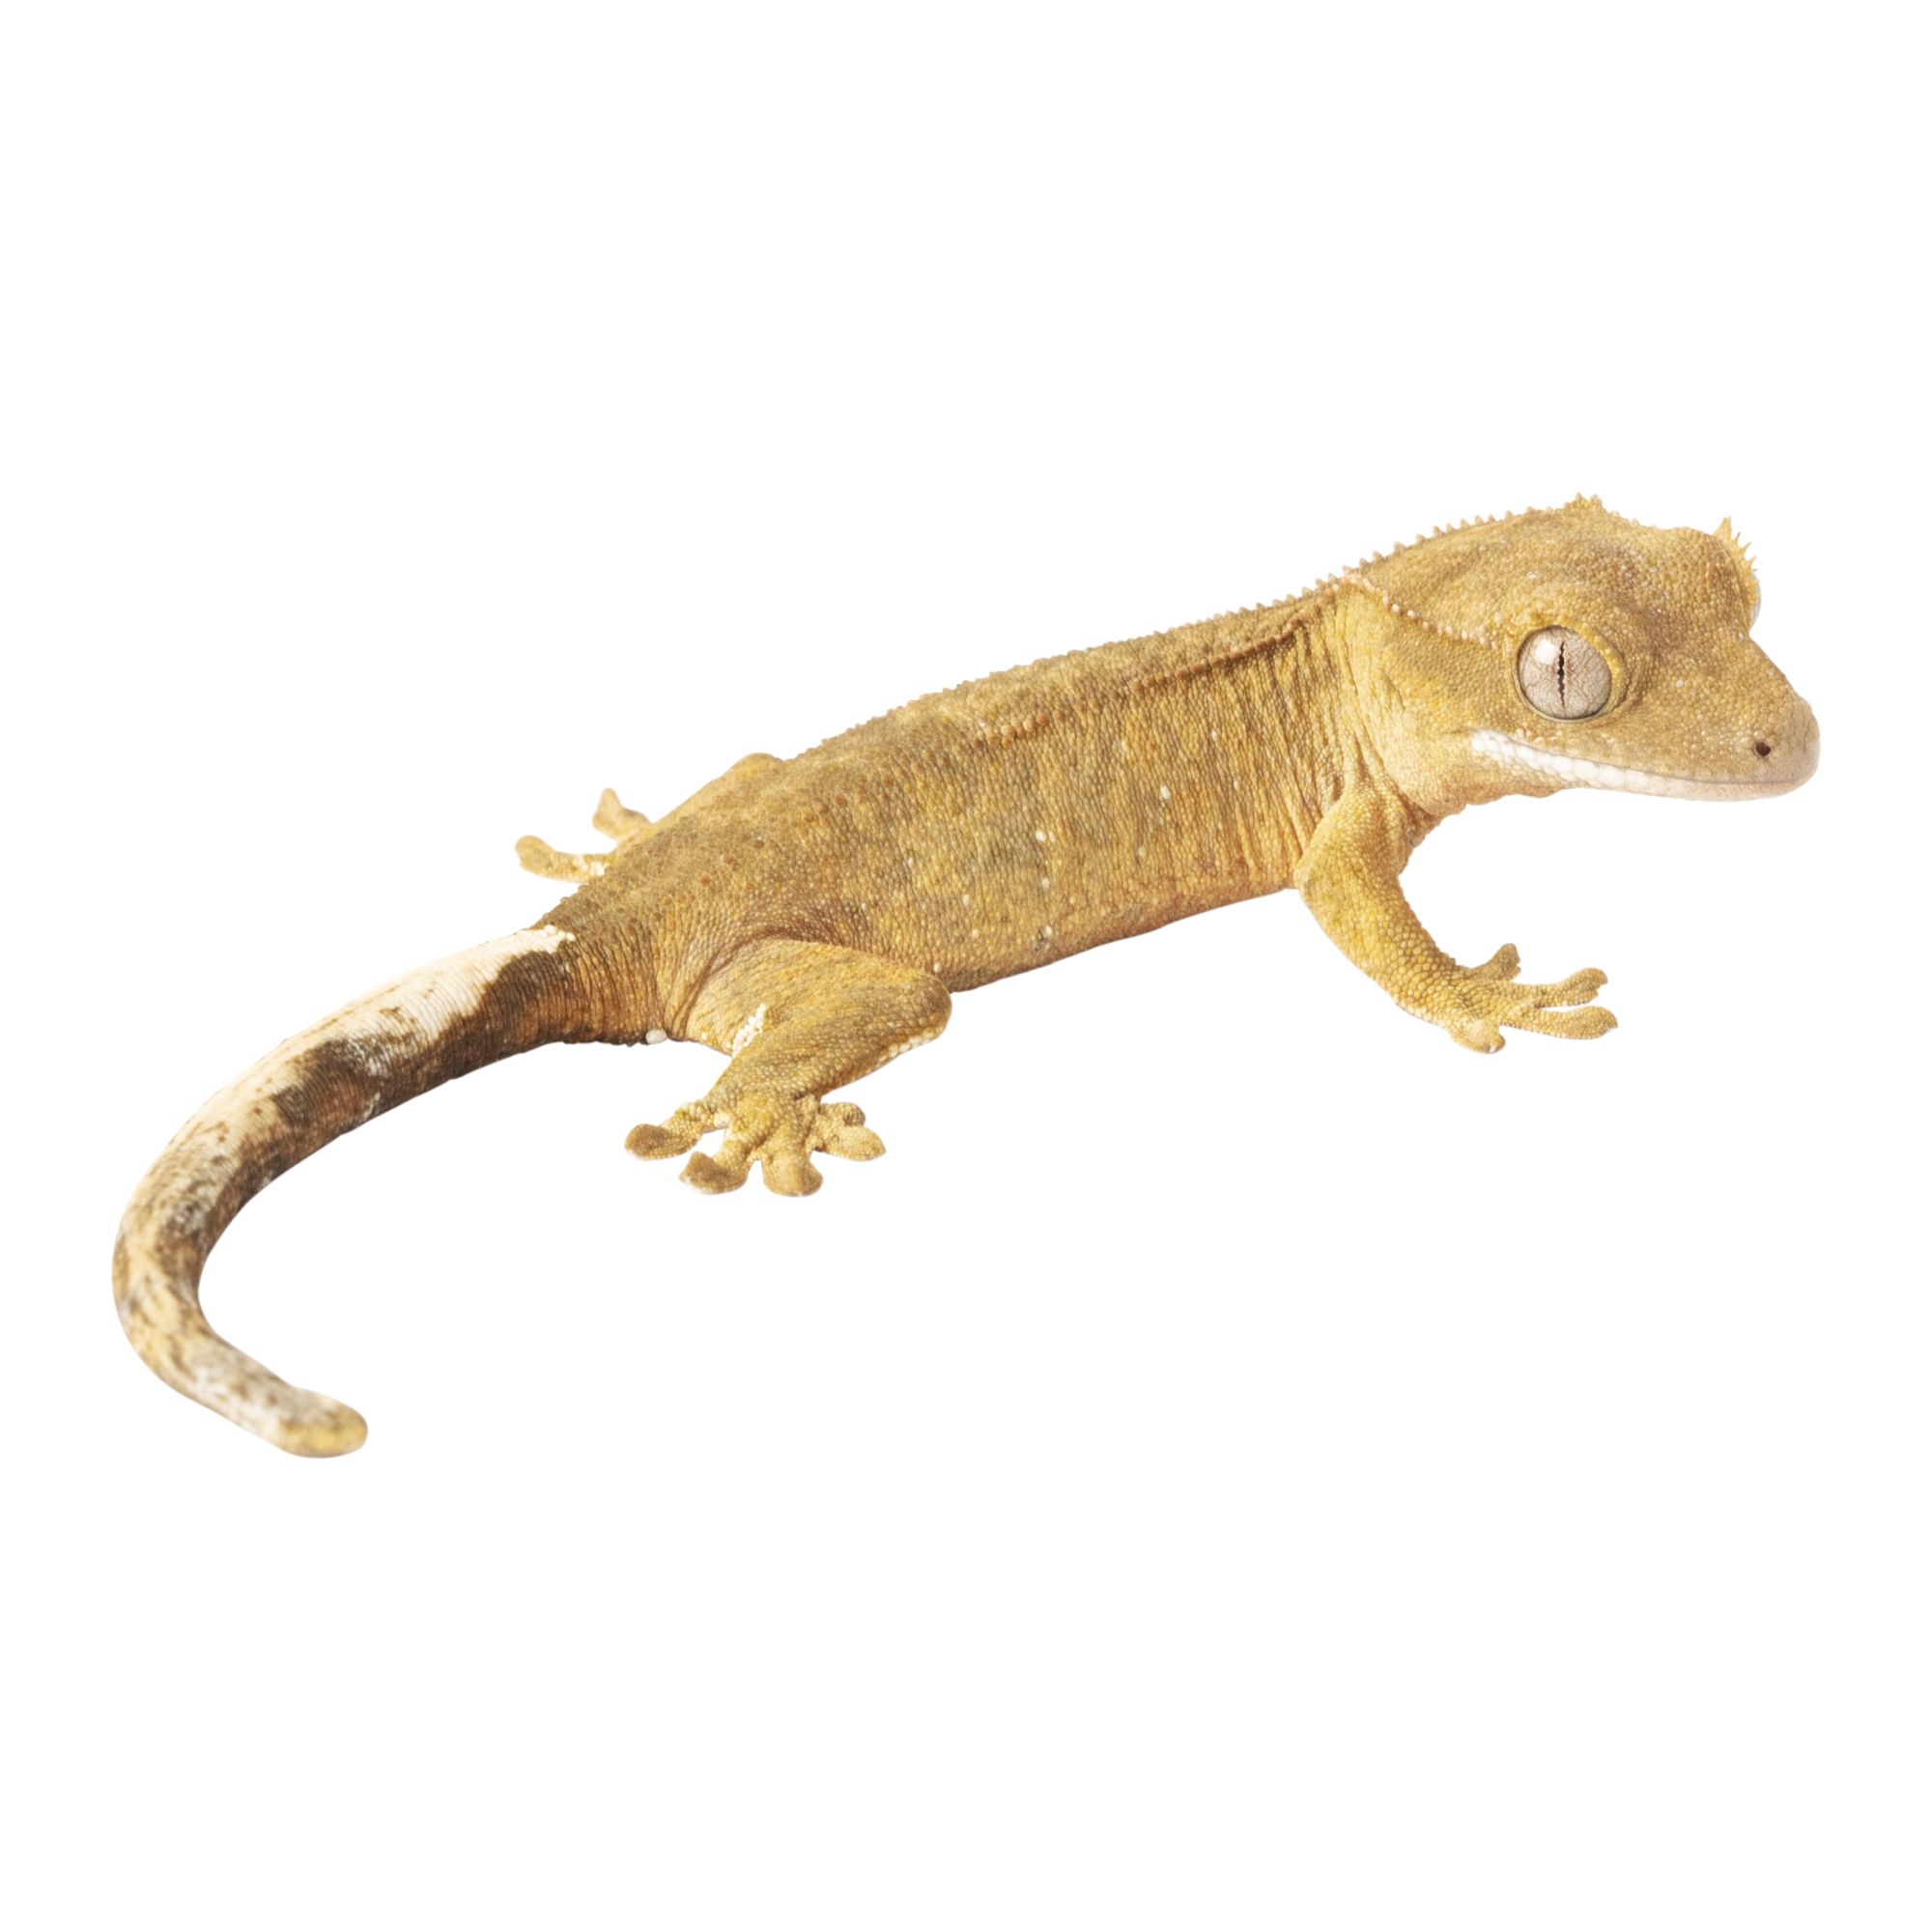 Eyelash Crested Gecko For Sale | Live 